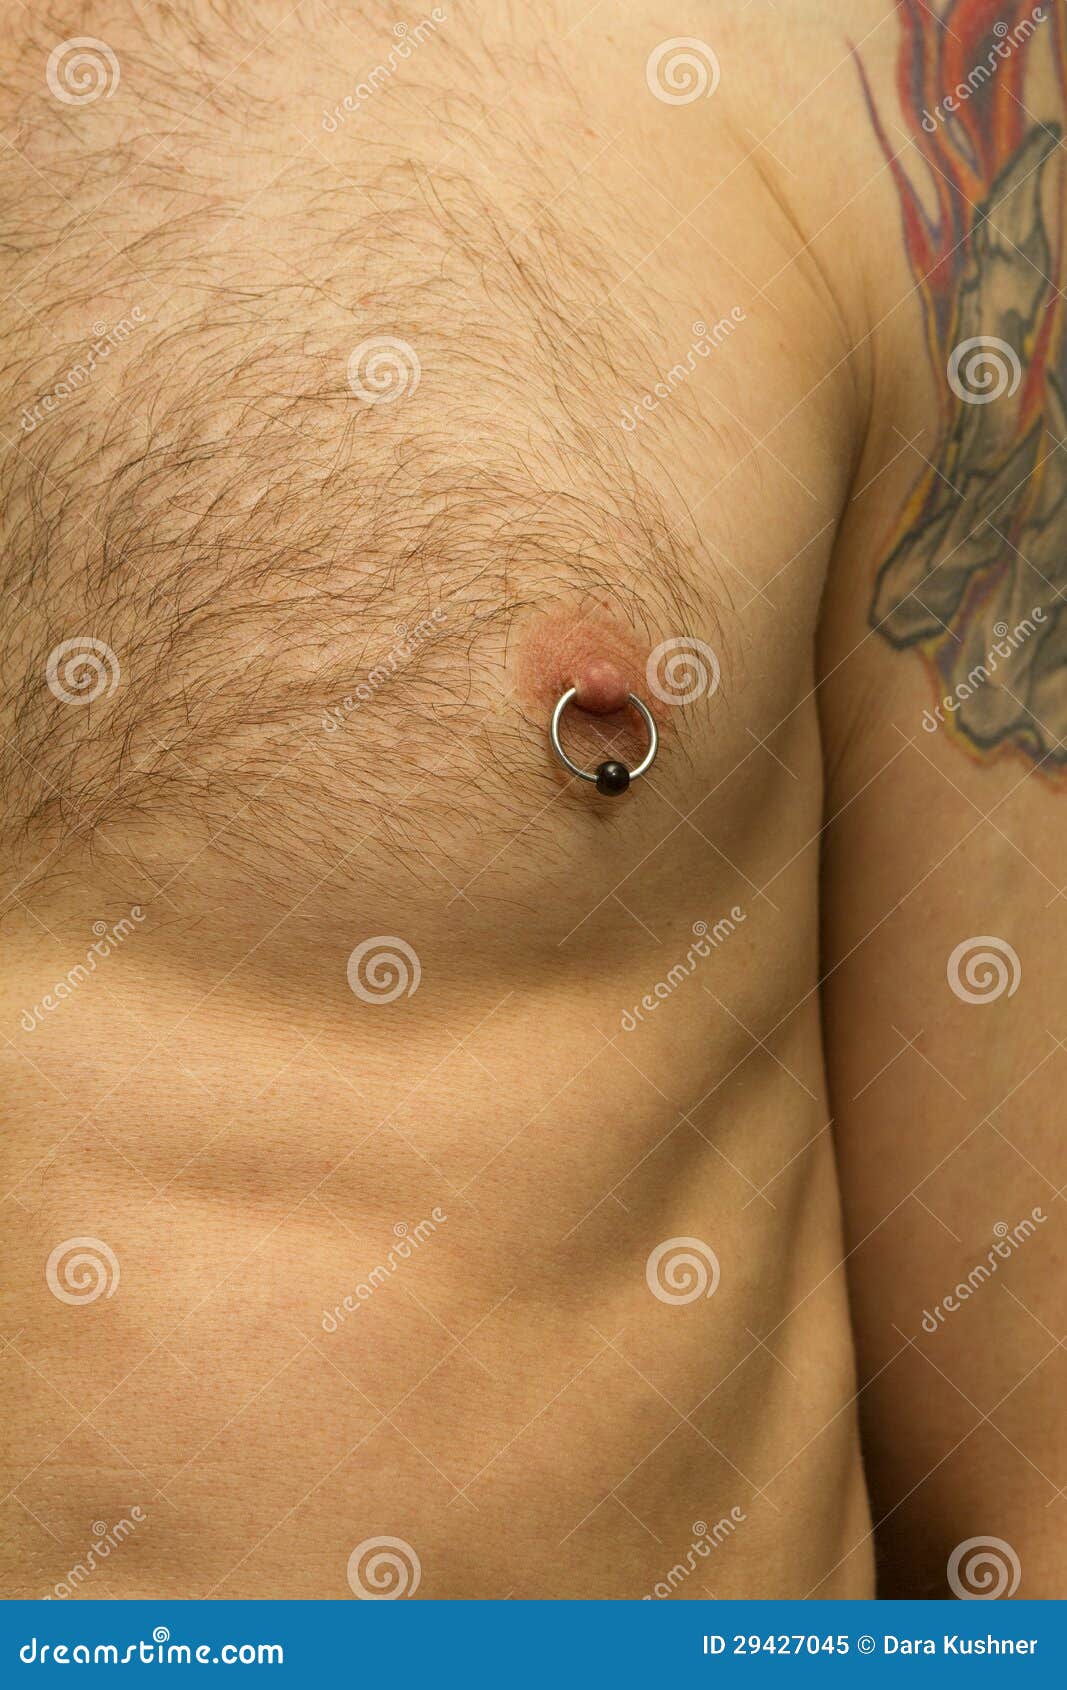 пирсинг на груди у мужчин фото 5